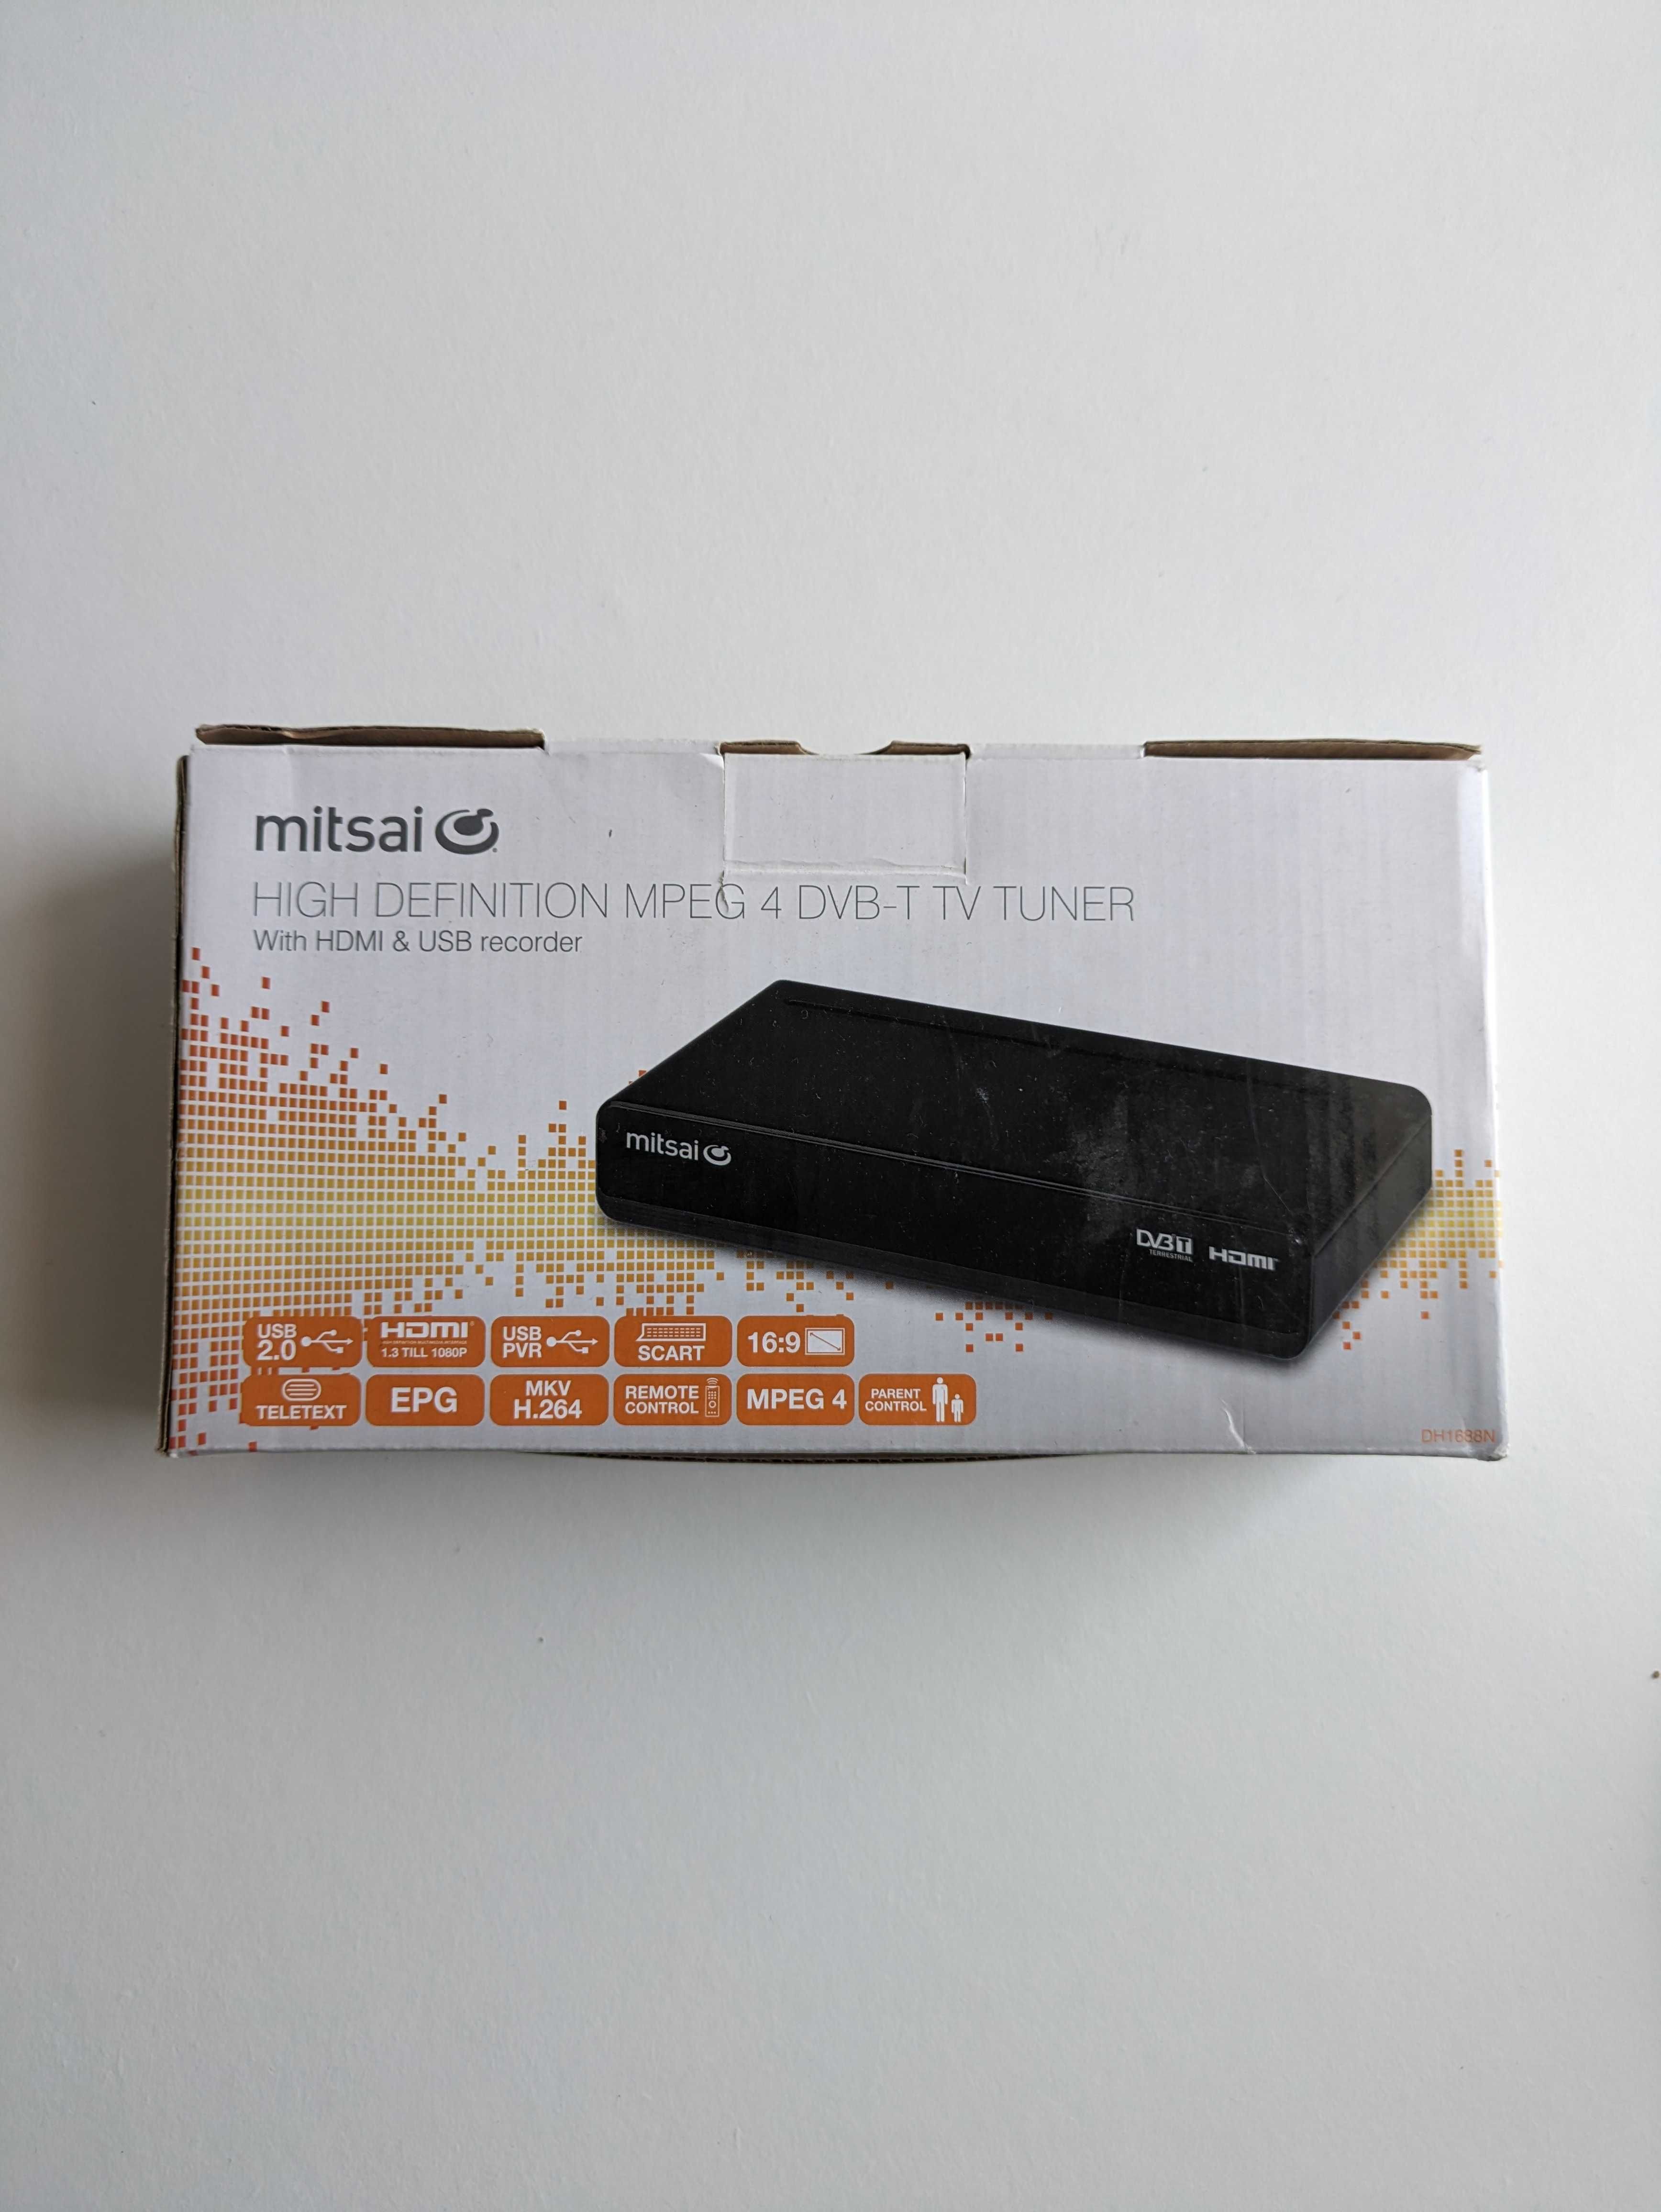 Mitsai MPEG 4 DVB-T TV Tuner